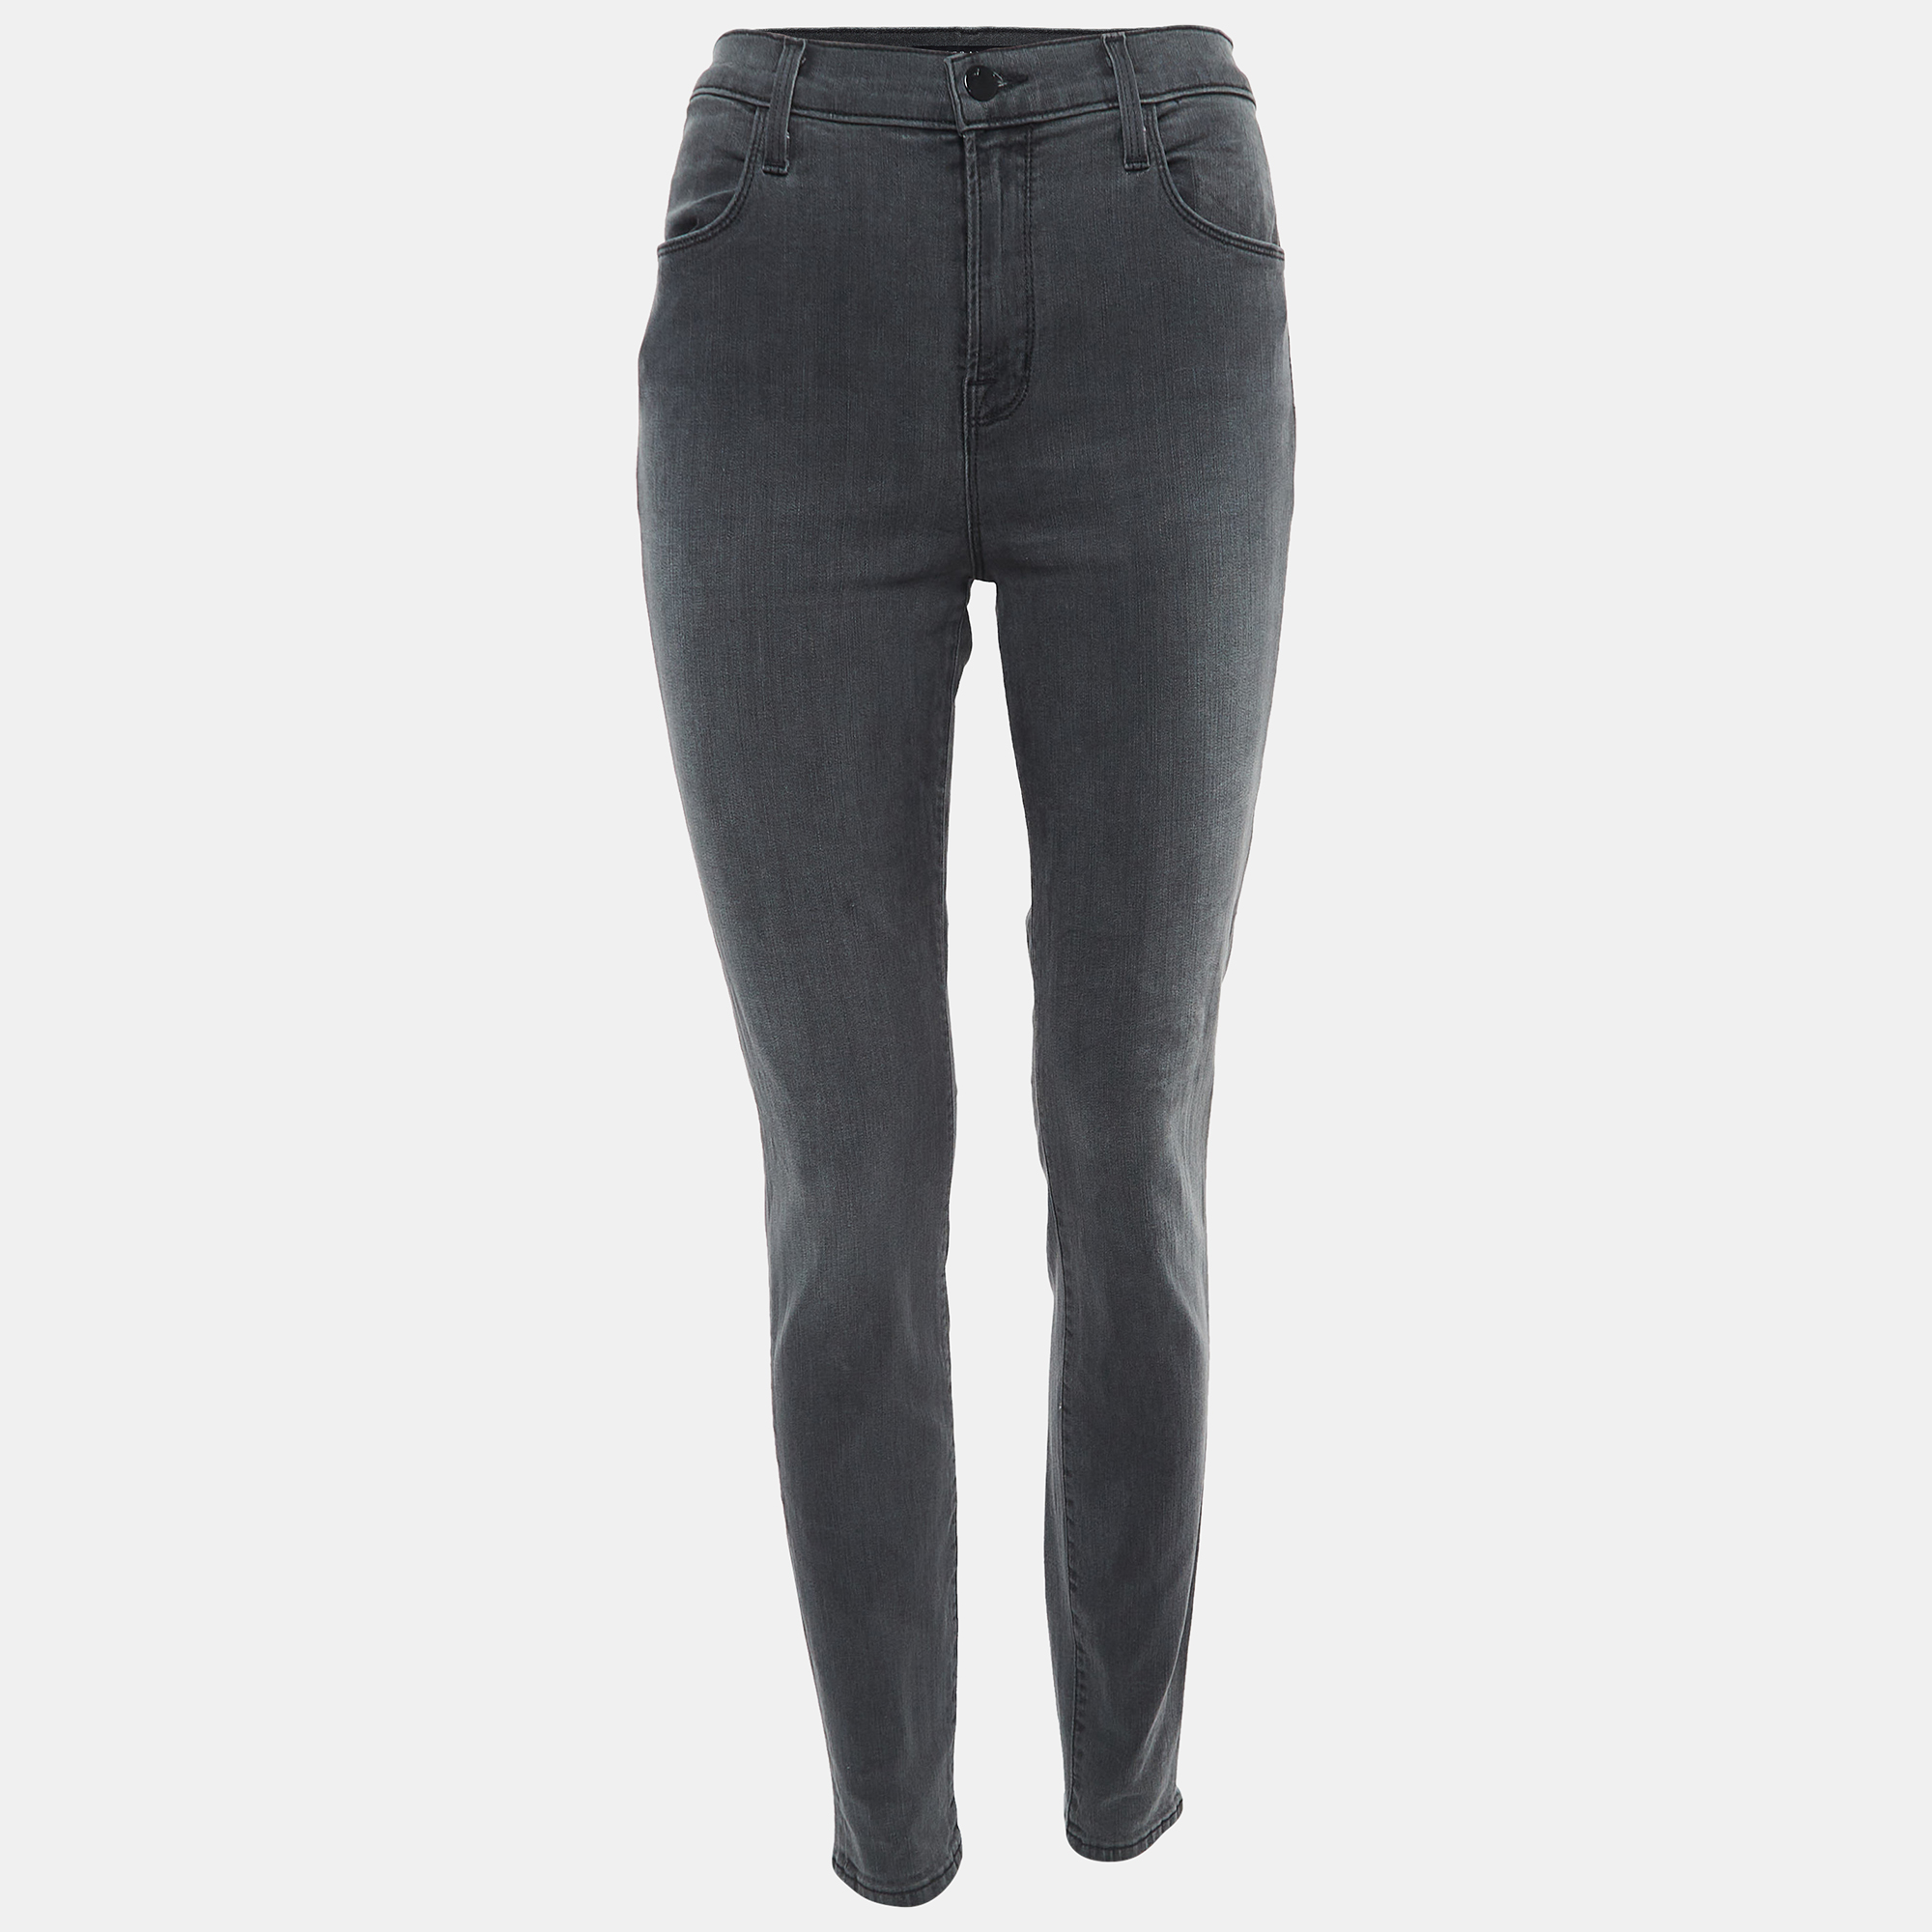 J Brand Grey Washed Denim Skinny Jeans M Waist 29